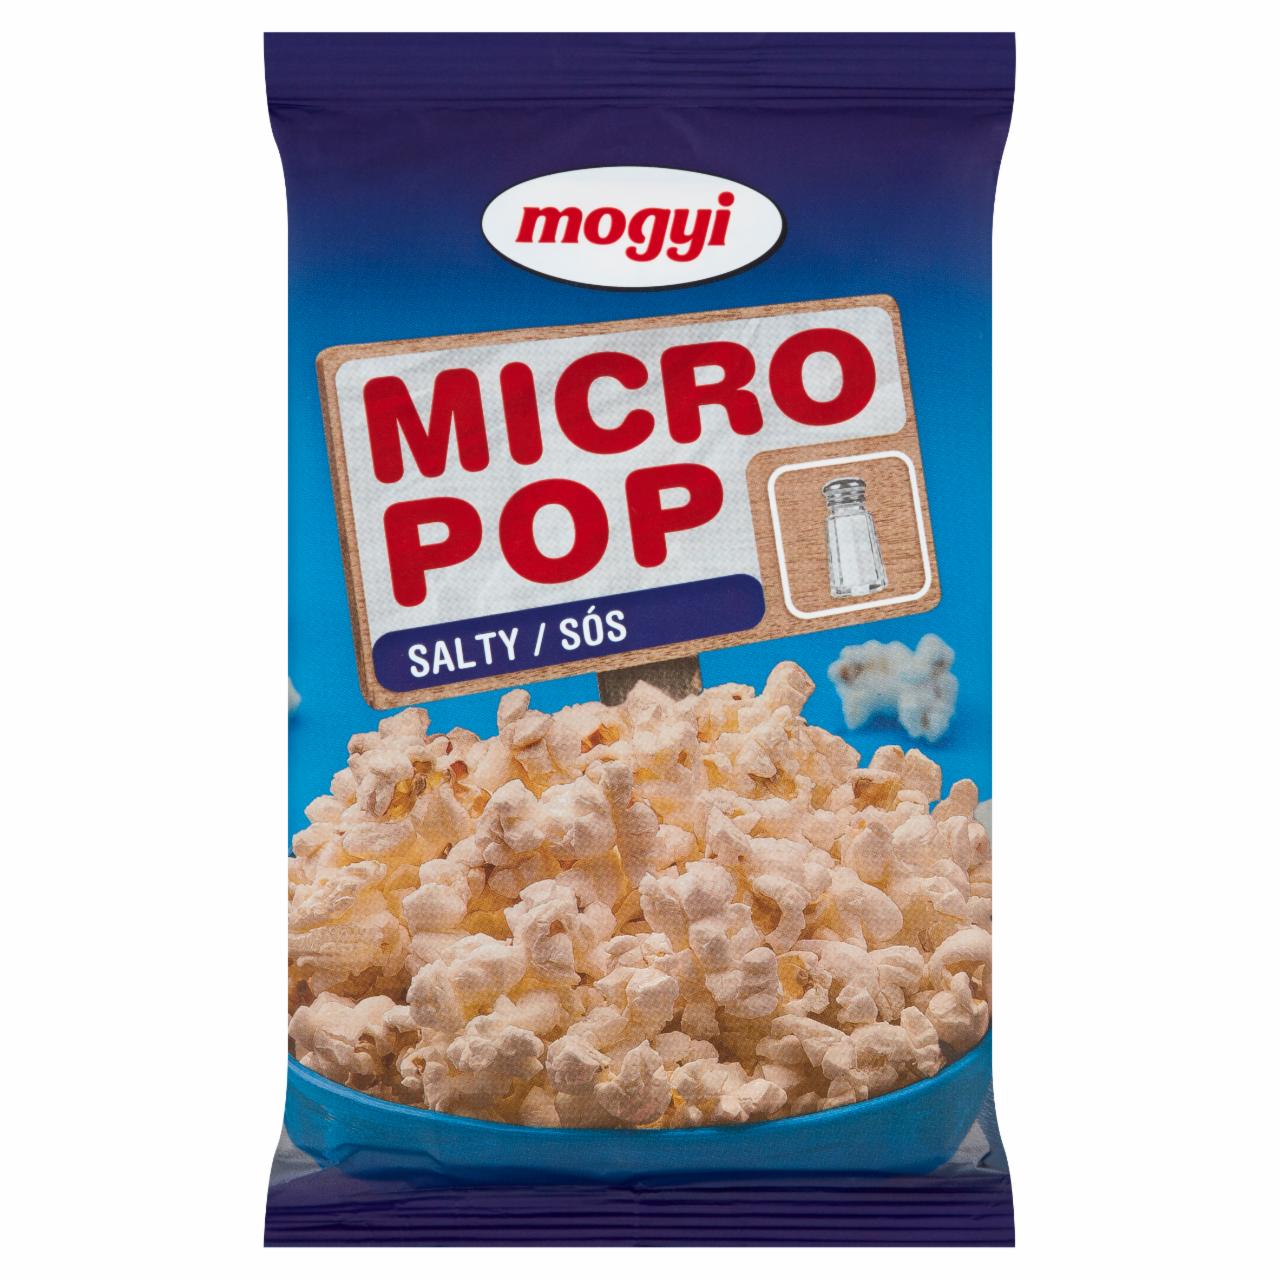 Képek - Mogyi Micro Pop sós, mikrohullámú sütőben elkészíthető pattogatni való kukorica 100 g